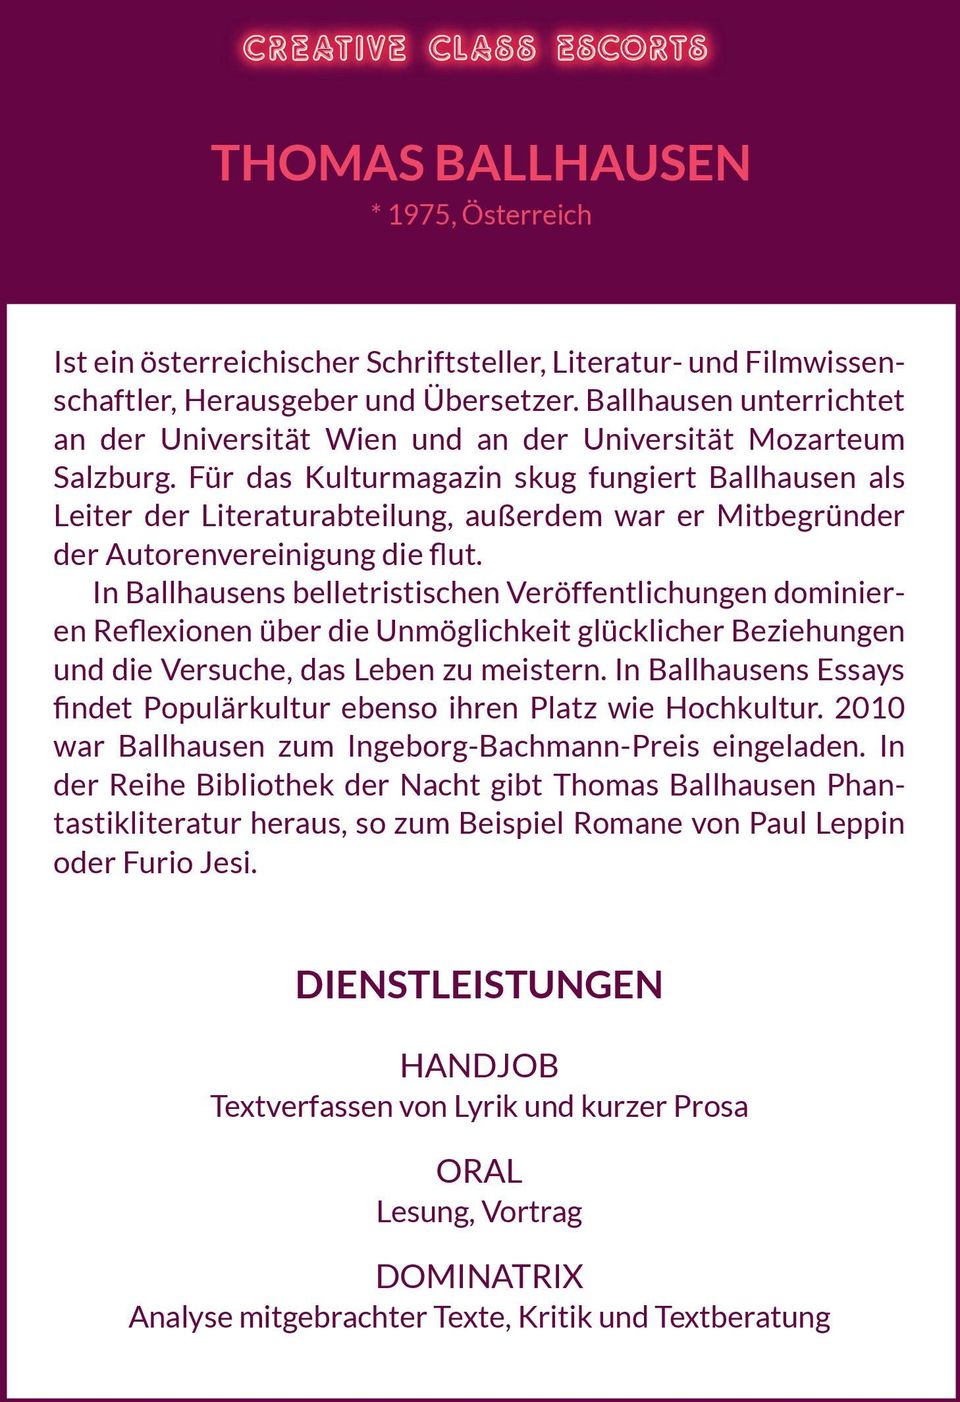 Für das Kulturmagazin skug fungiert Ballhausen als Leiter der Literaturabteilung, außerdem war er Mitbegründer der Autorenvereinigung die flut.